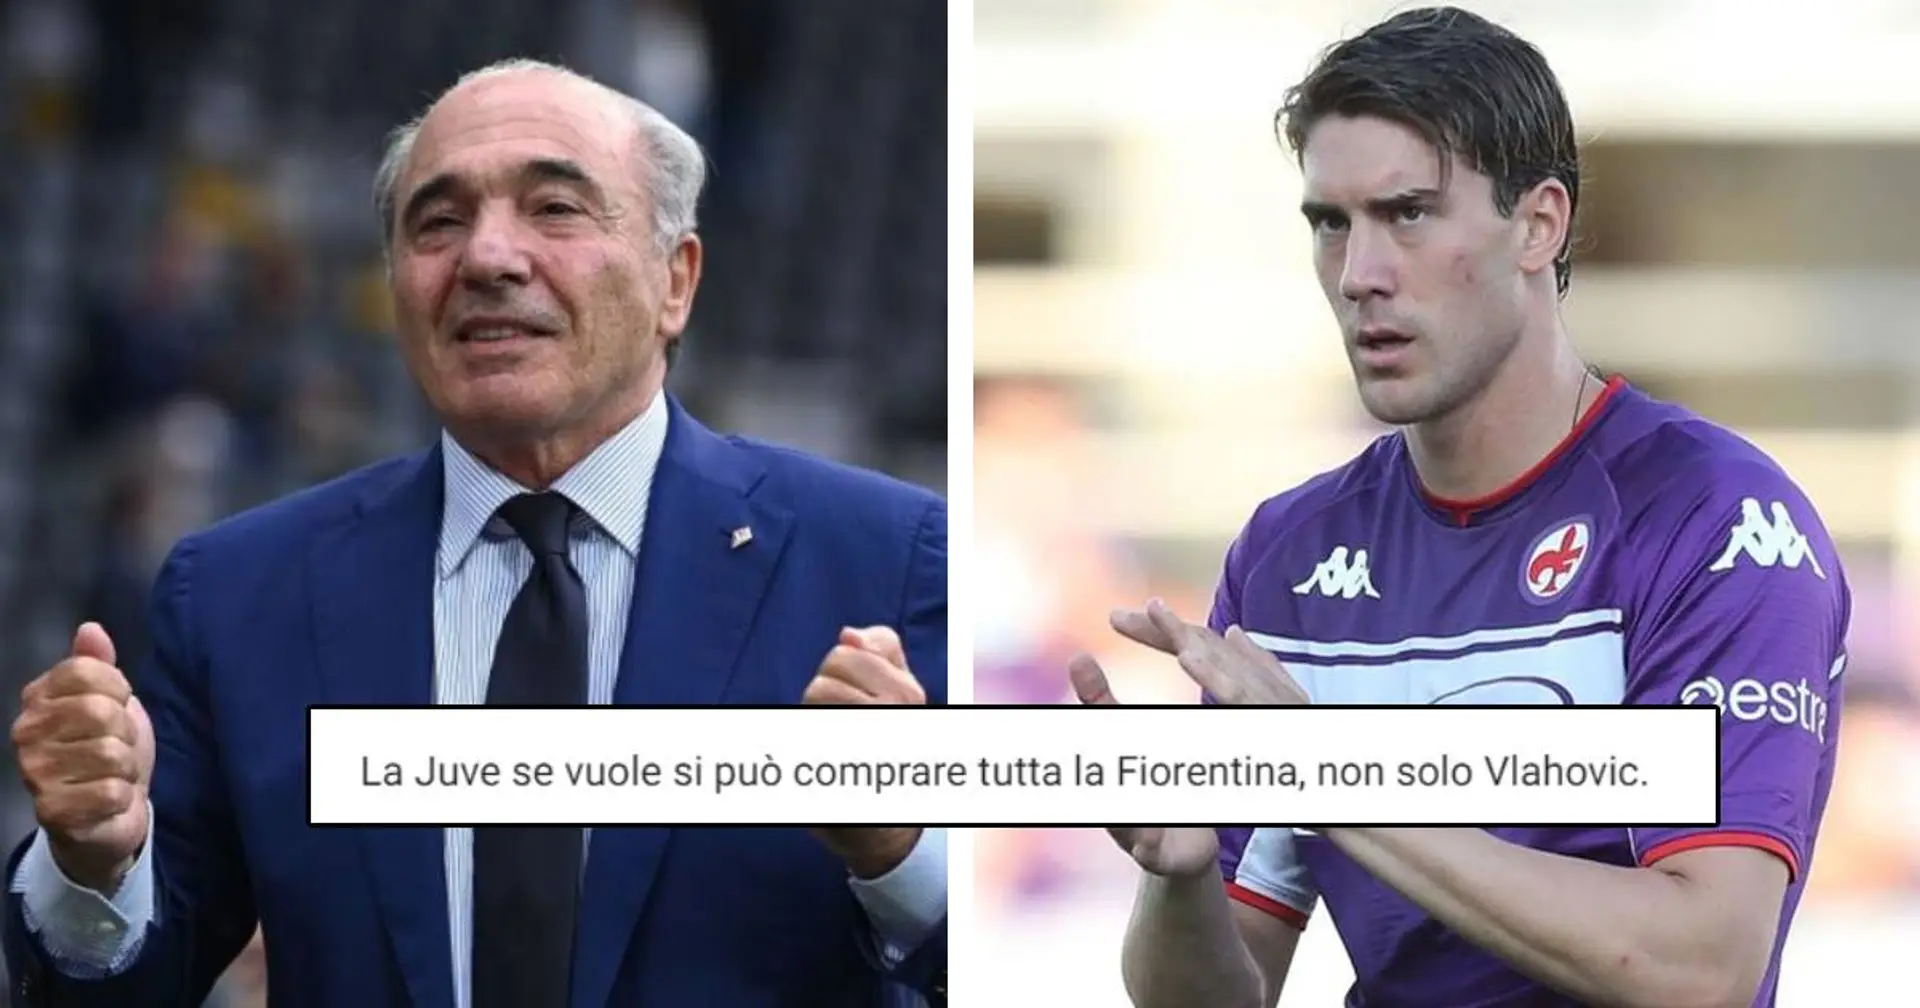 "Sei terrorizzato che la Juventus prenda Vlahovic", i tifosi bianconeri rispondono a Commisso  